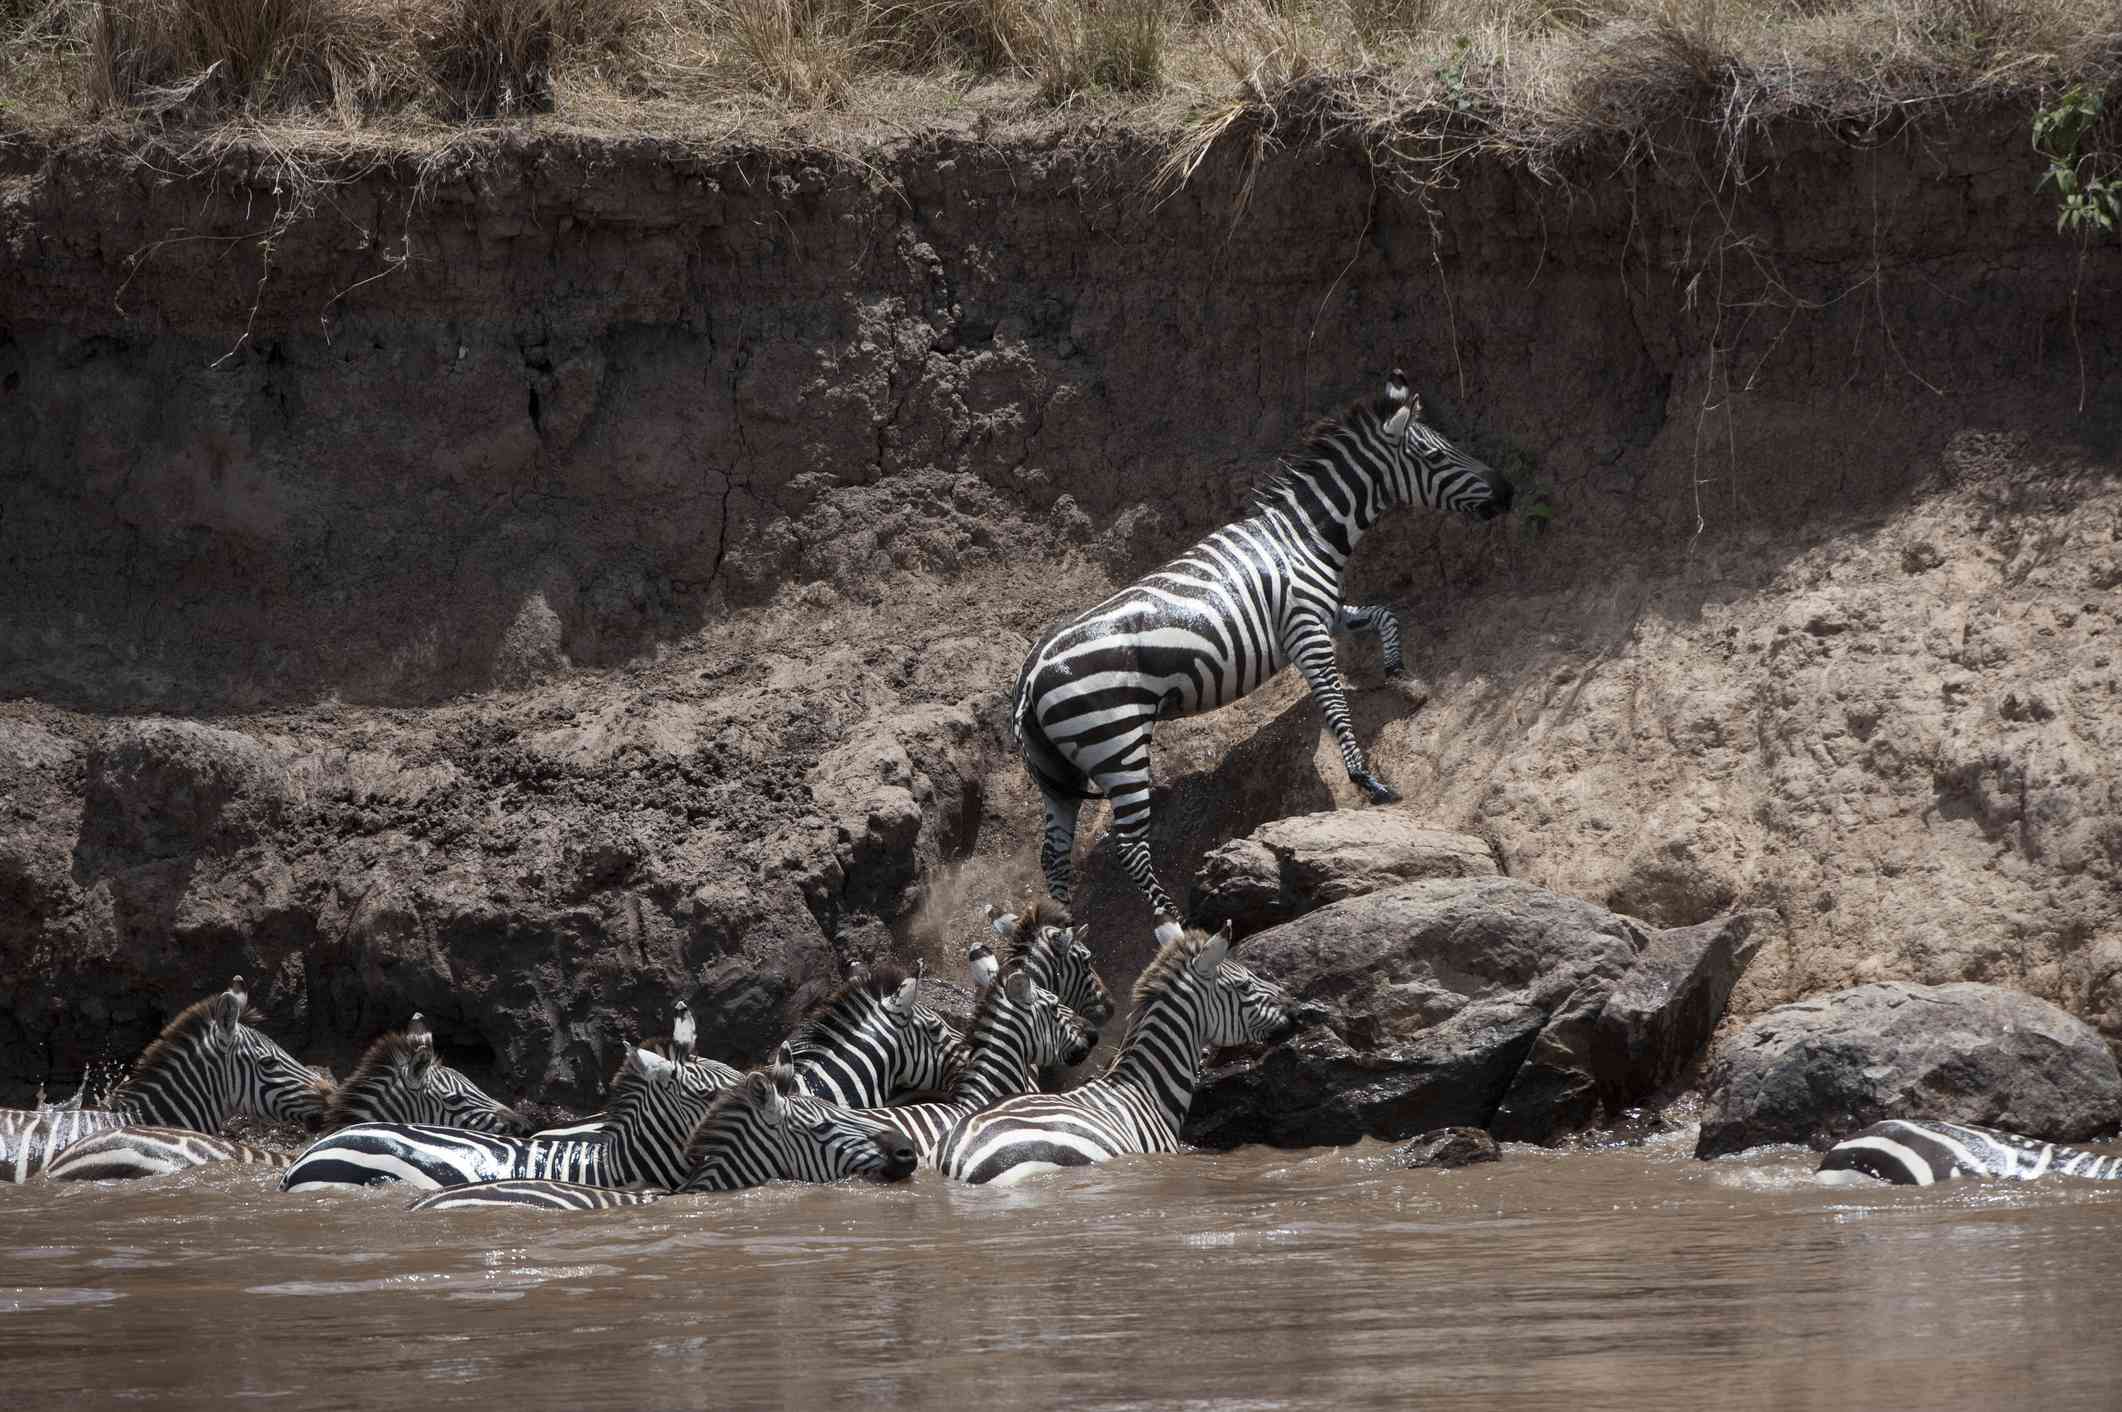 Una cebra de las llanuras trepando por la orilla de un río en África mientras otras cebras esperan en el río